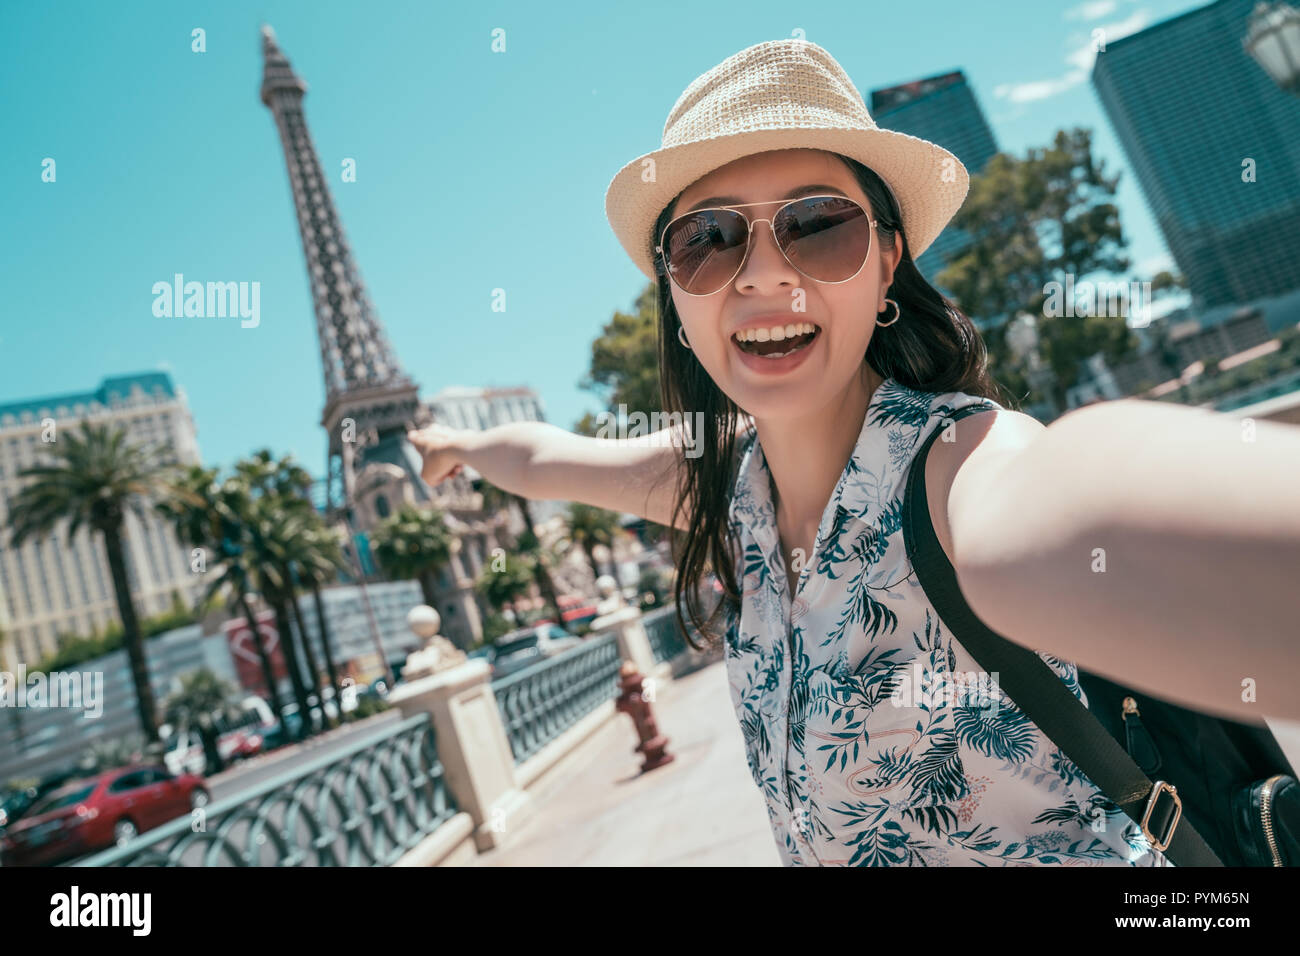 Asiatische Frau, self portrait selfie Foto auf Amerika reisen. hohen Turm in Las Vegas. Junge Mädchen genießen Tourismus in USA im Sommer Urlaub. Stockfoto